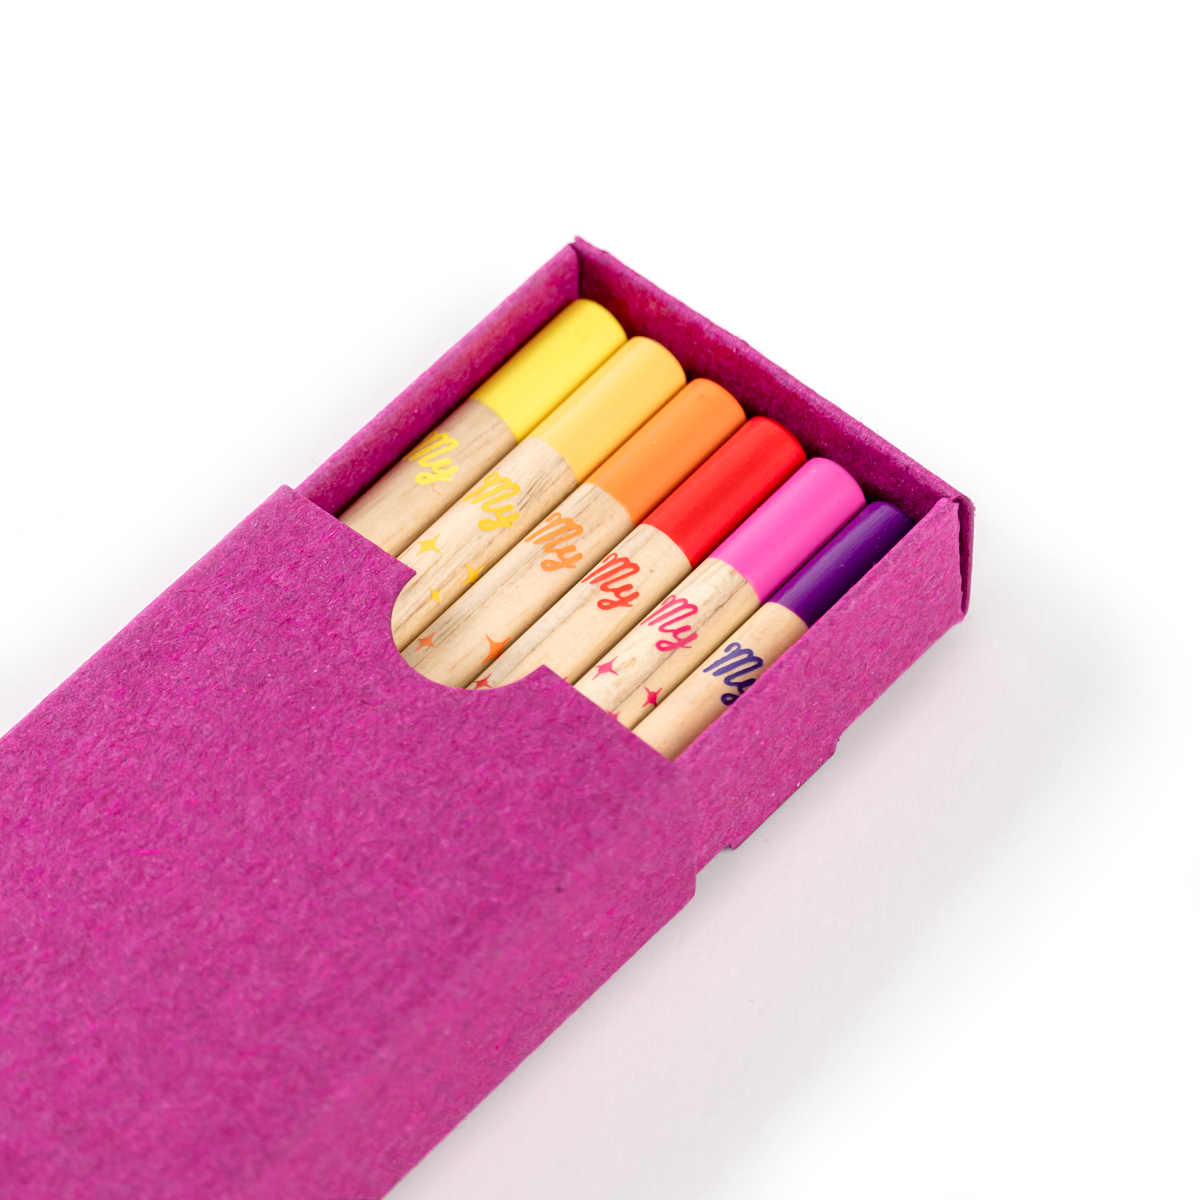 Boite de 12 crayons colorés à la cire twistable - Lefranc